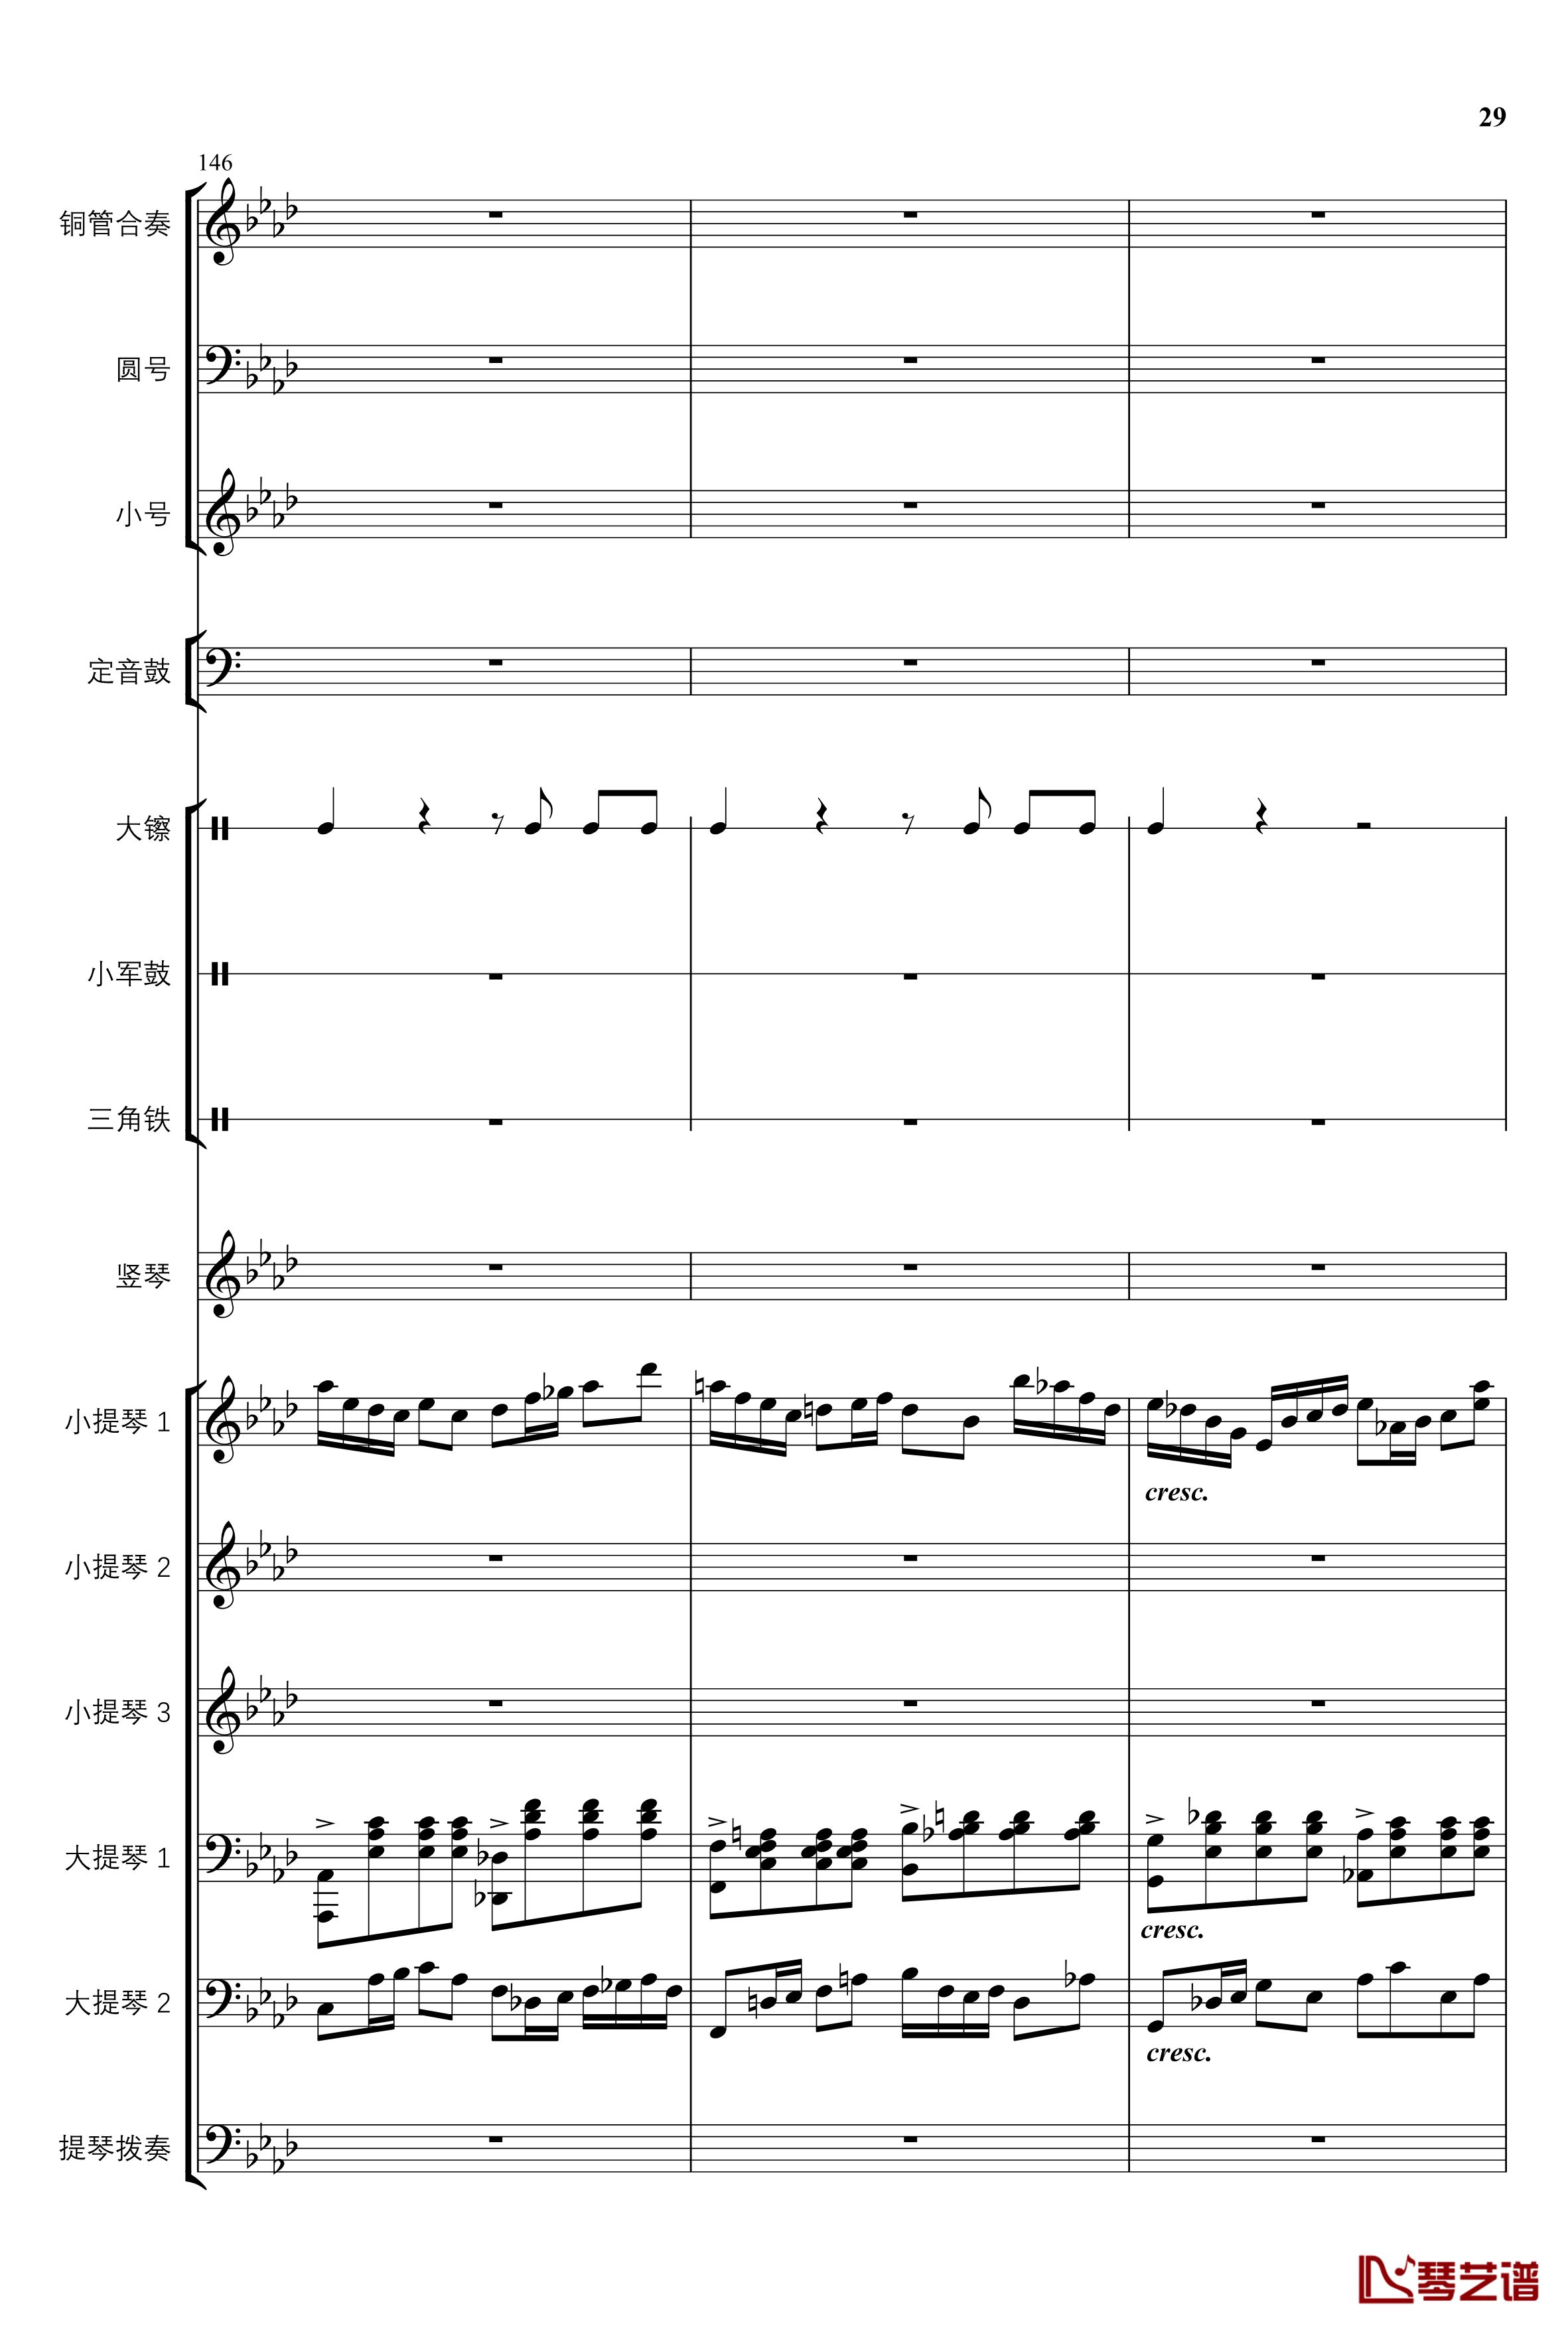 2013考试周的叙事曲钢琴谱-管弦乐重编曲版-江畔新绿